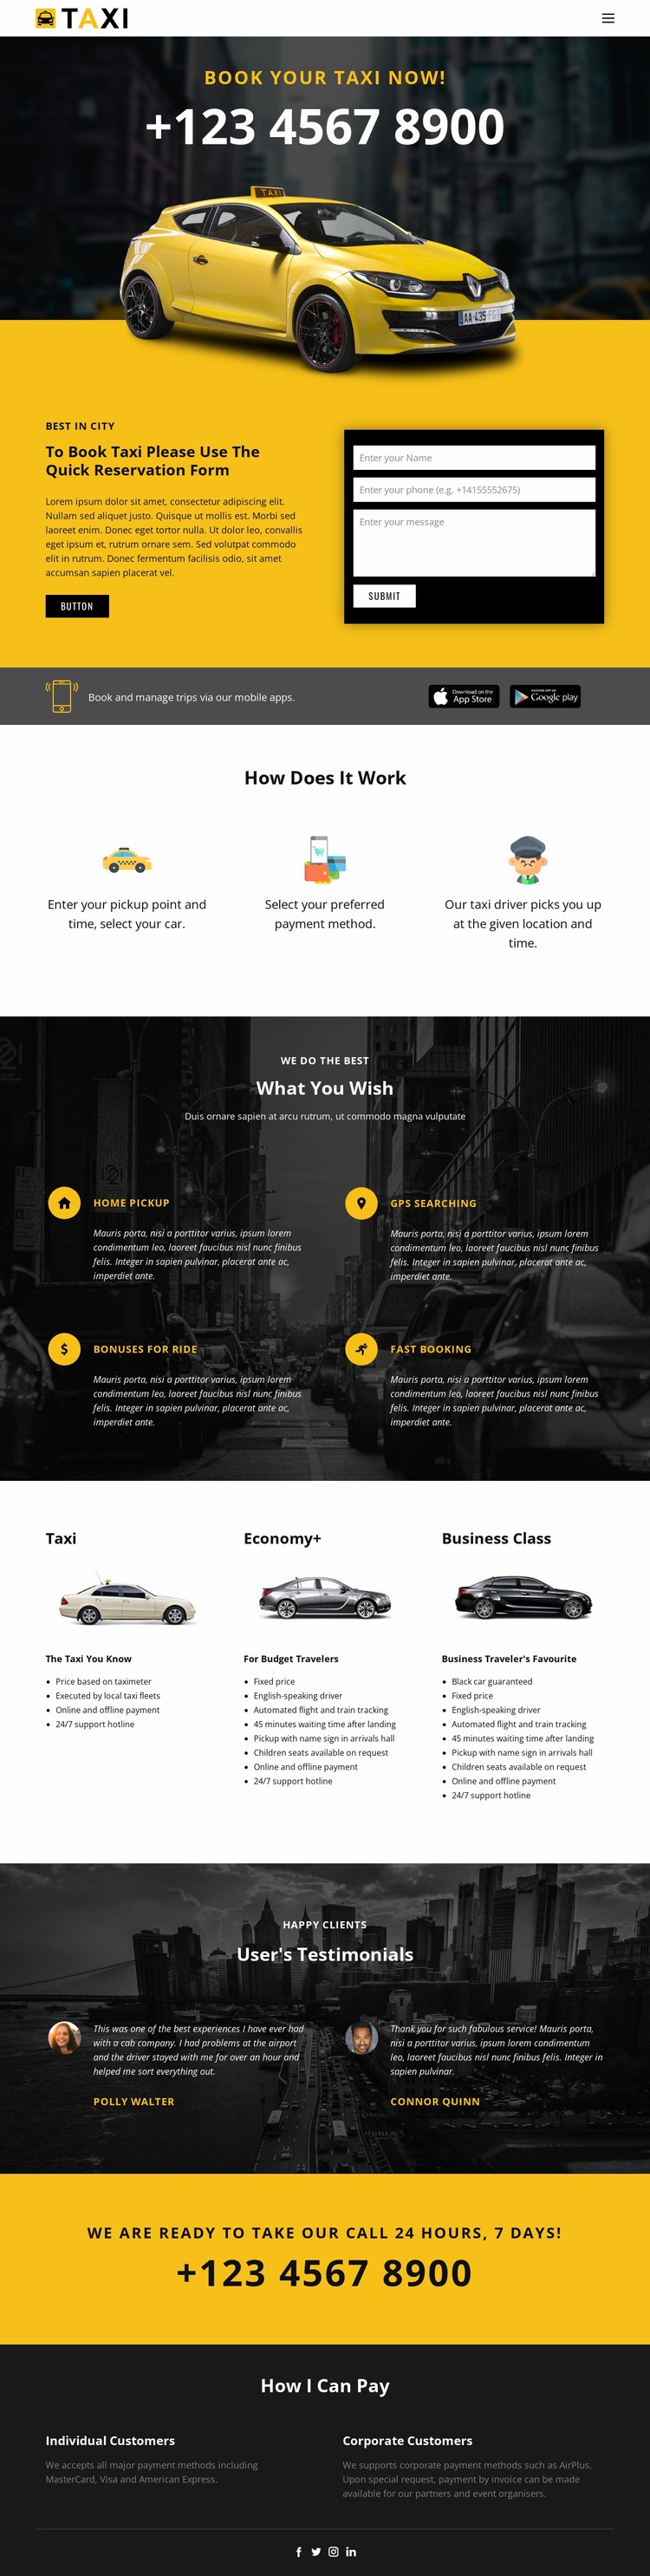 A leggyorsabb taxi autók Html Weboldal készítő